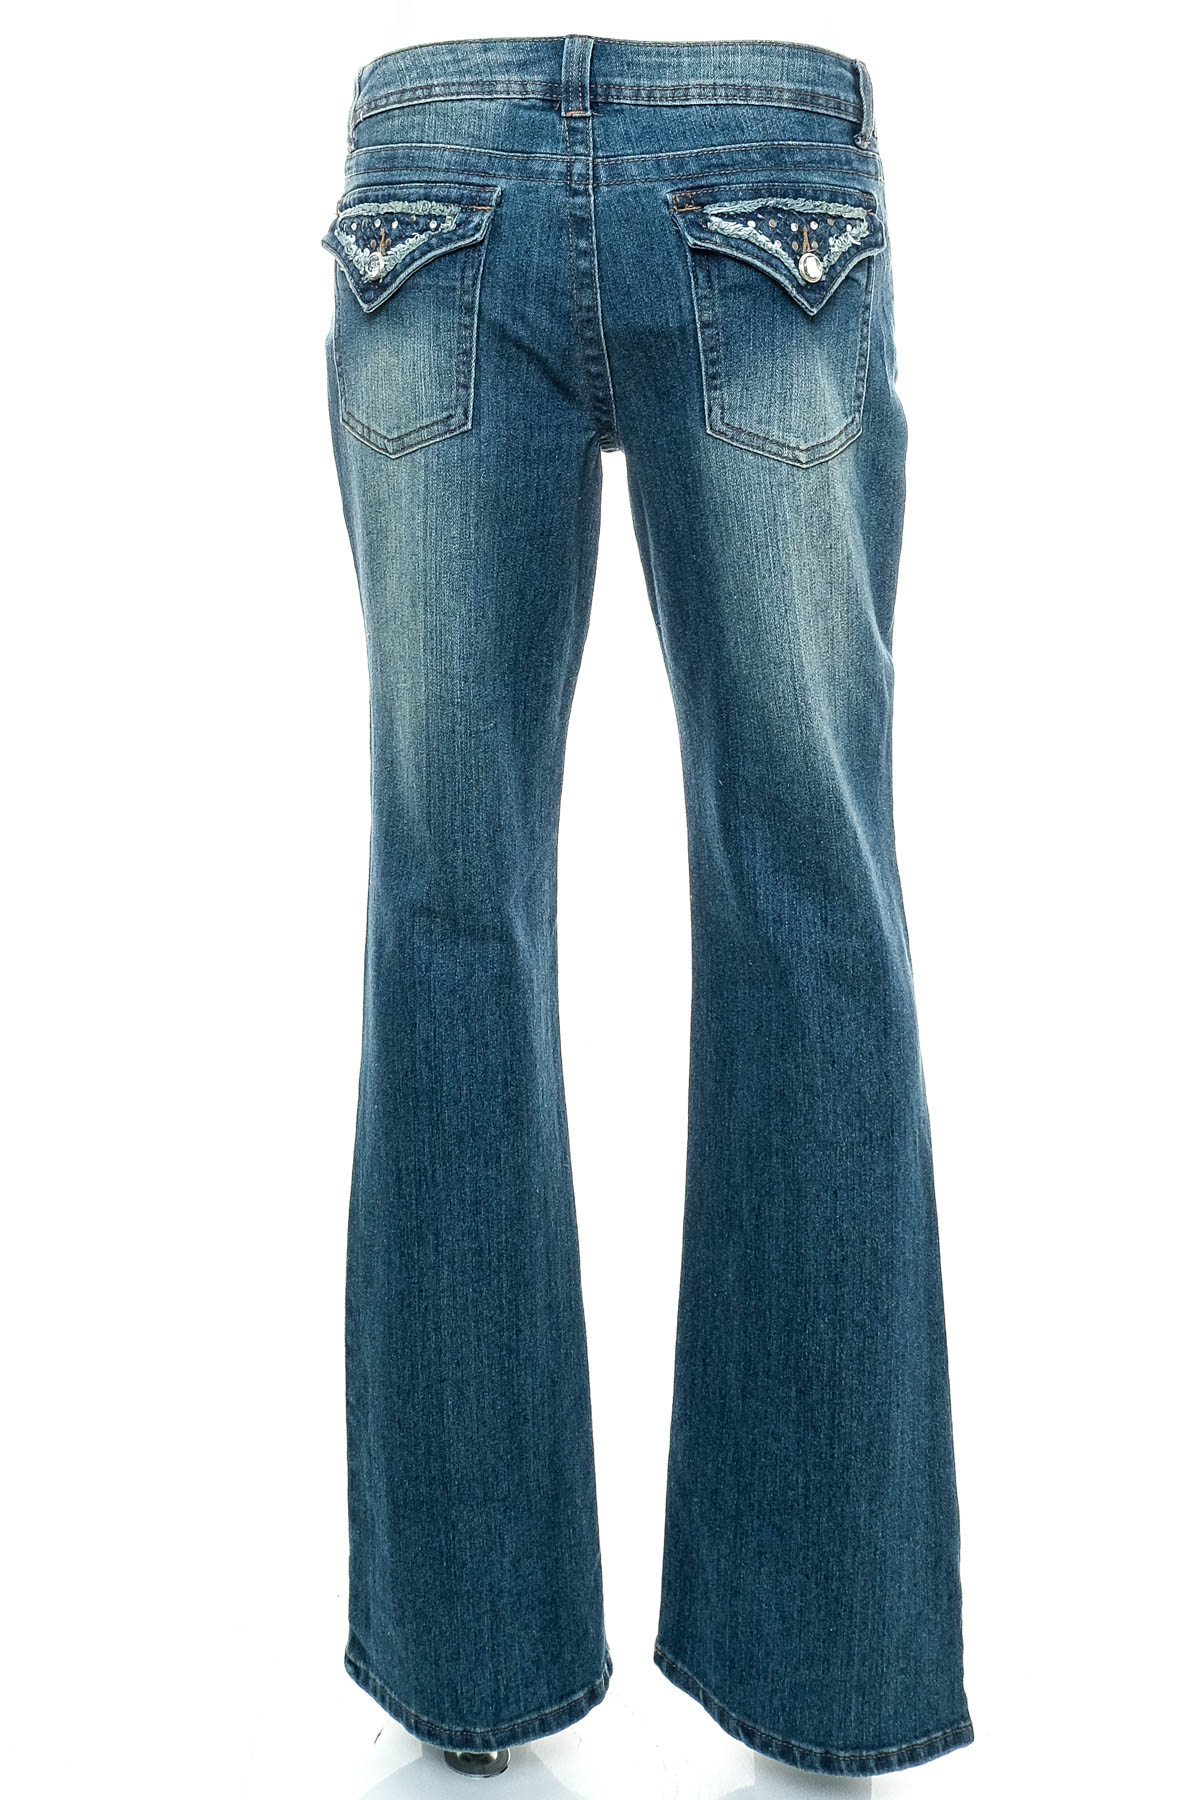 Women's jeans - APT. 9 - 1